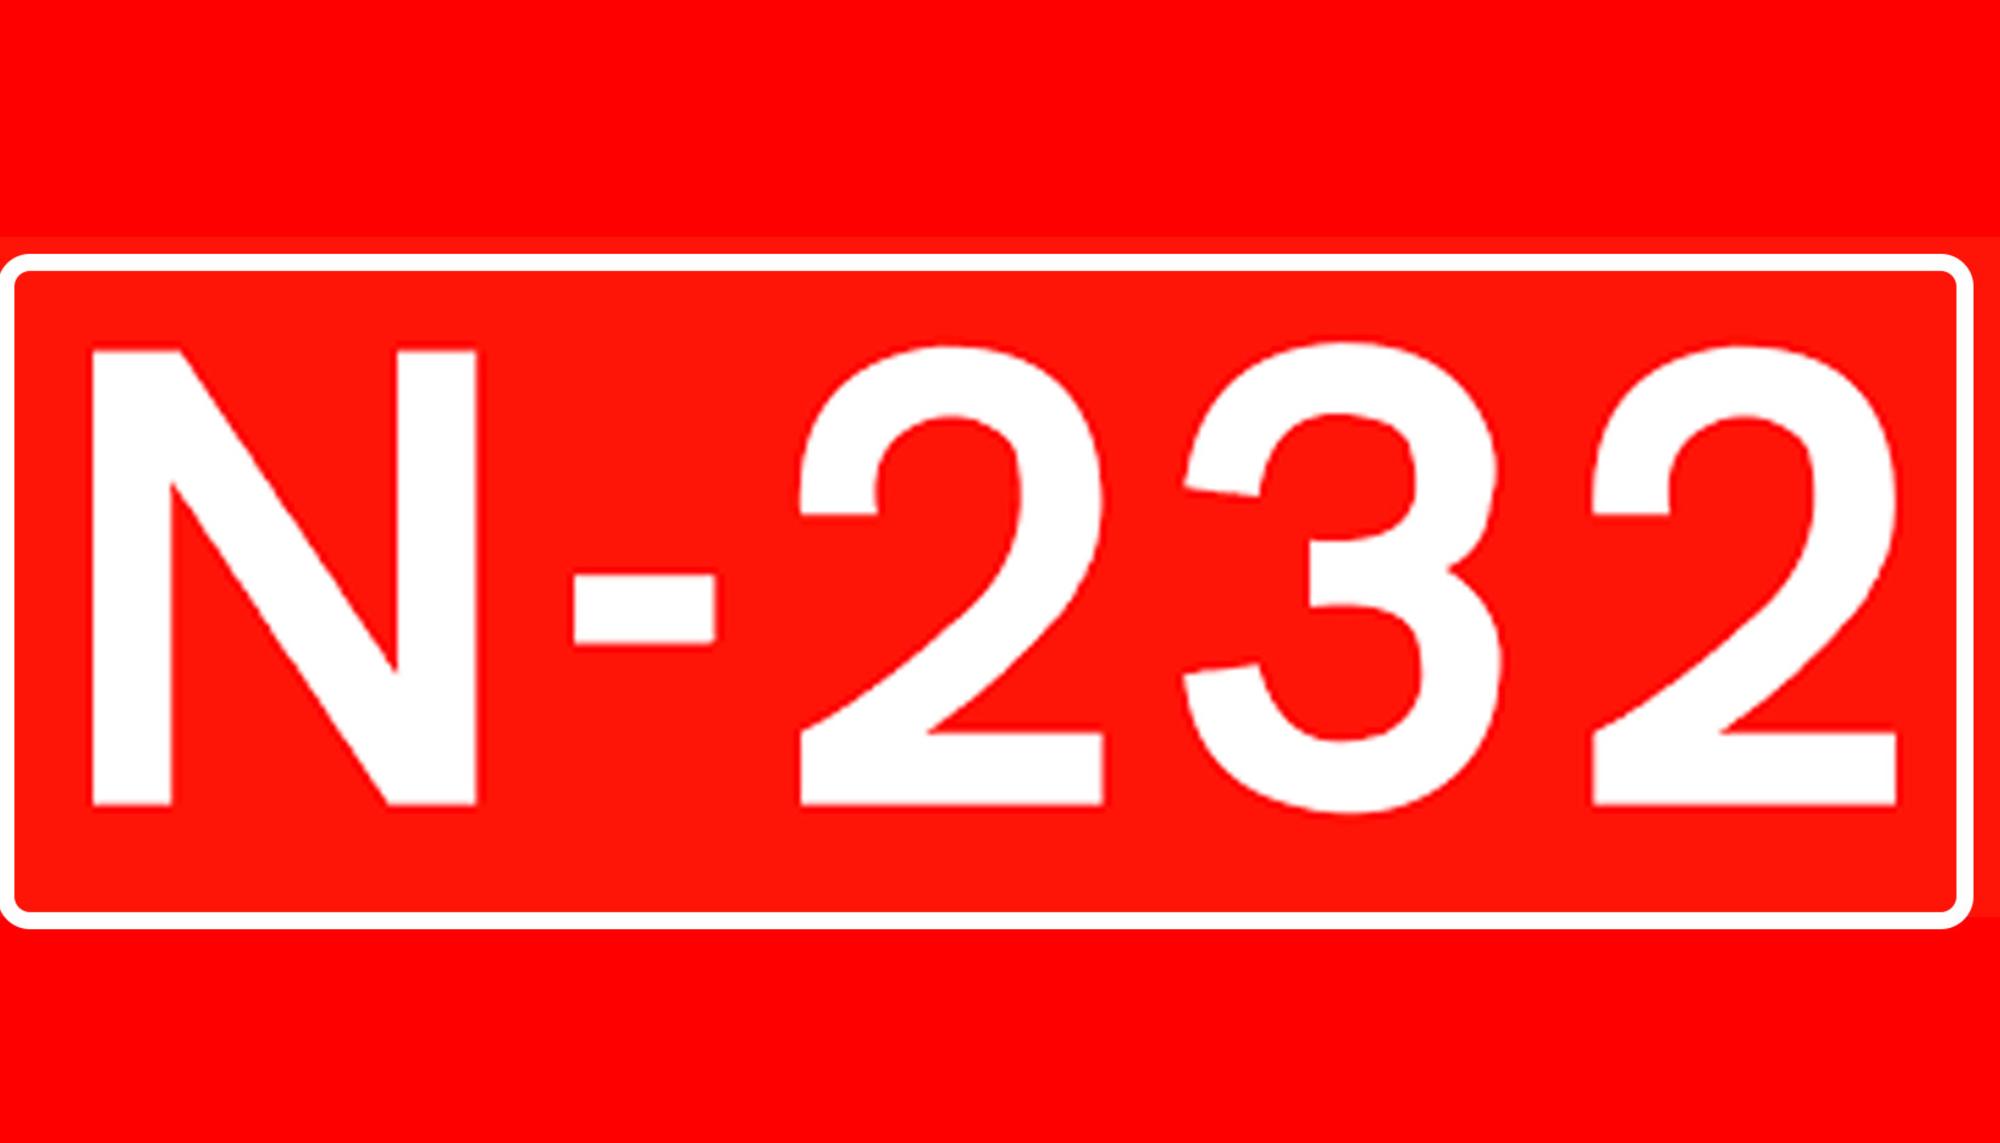 N232